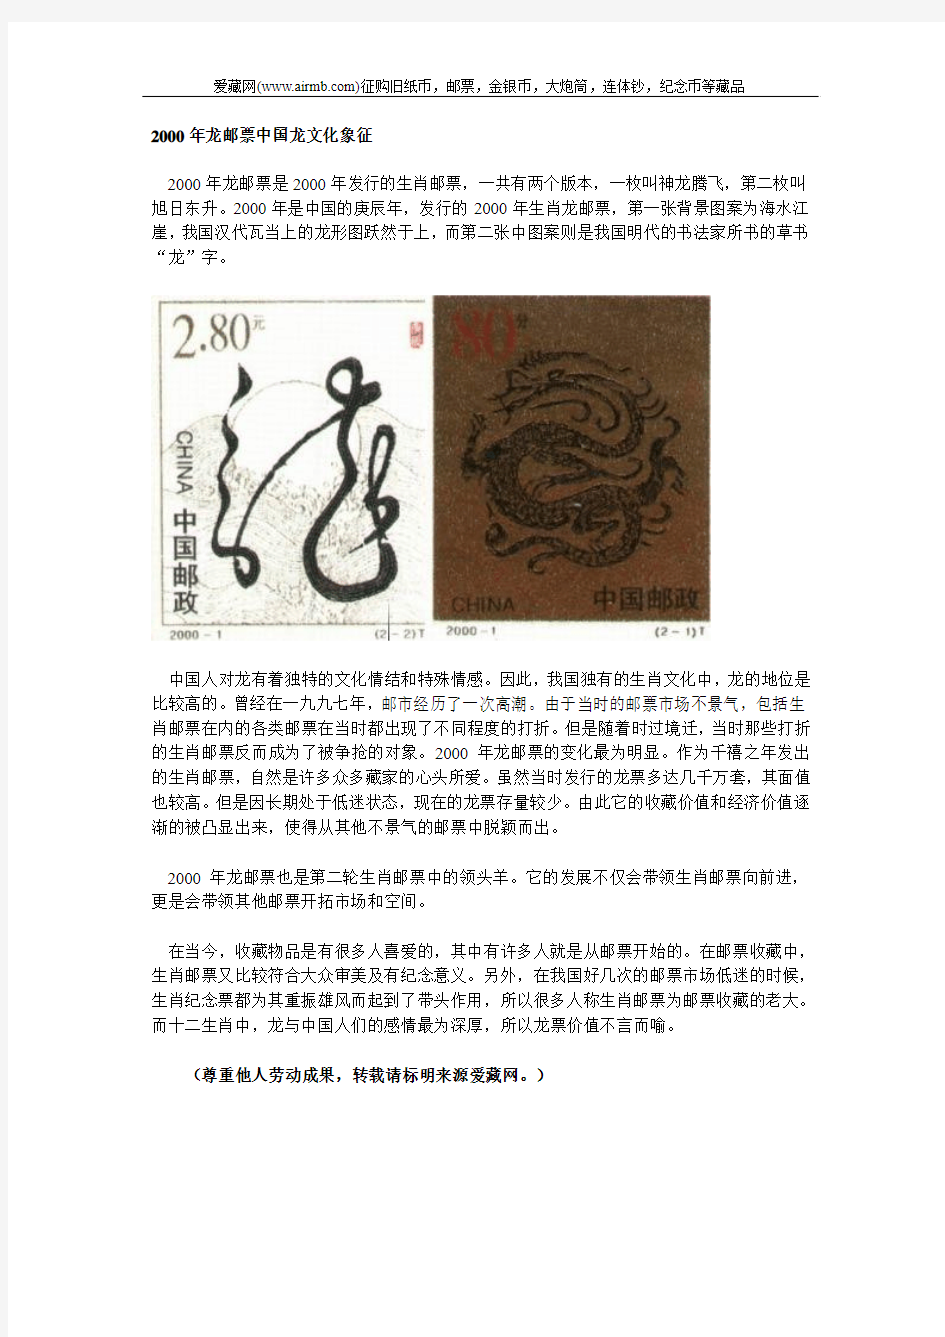 2000年龙邮票中国龙文化象征